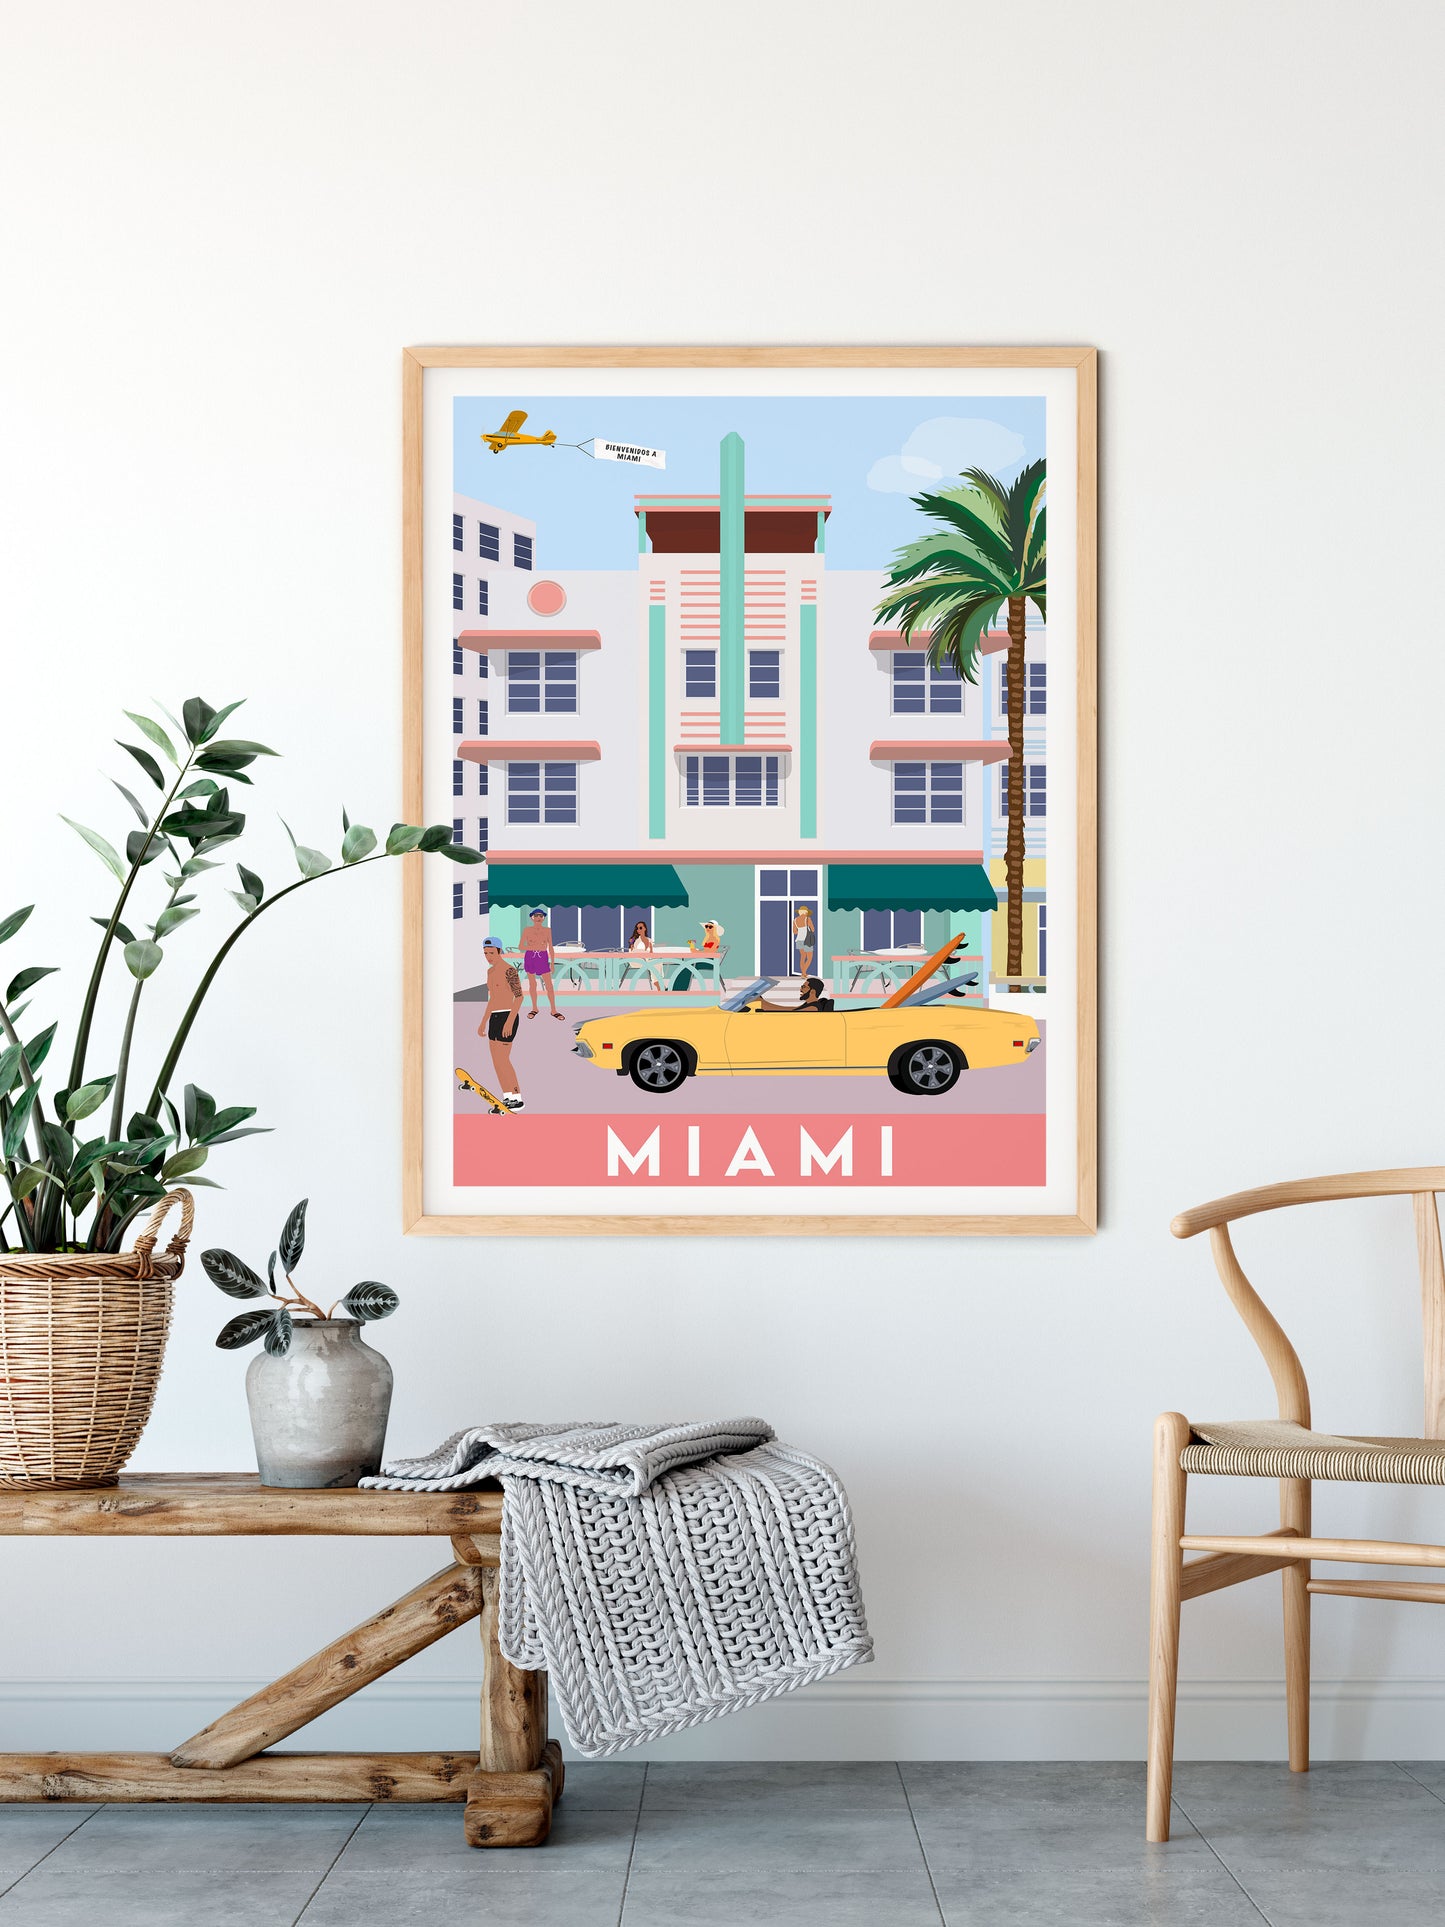 Miami Beach, USA